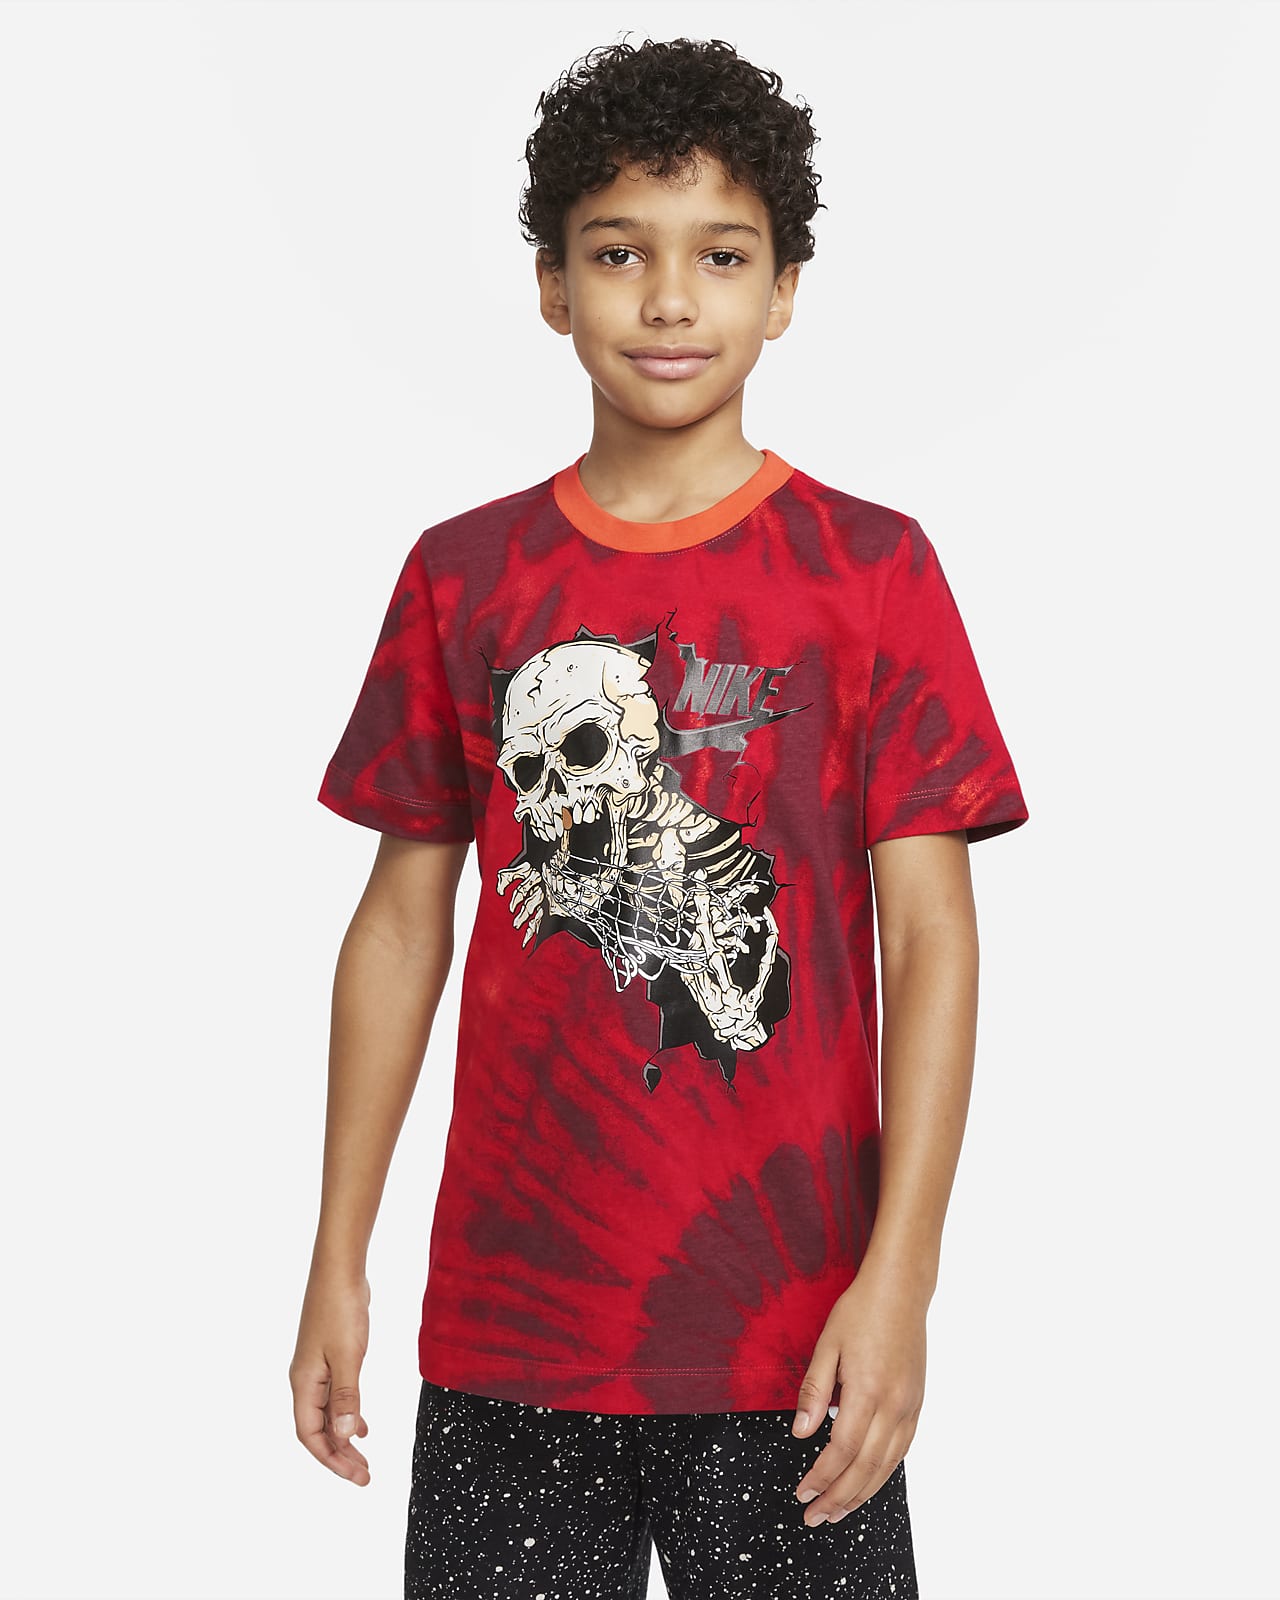 Nike Sportswear Frenzy Big Kids' (Boys') T-Shirt